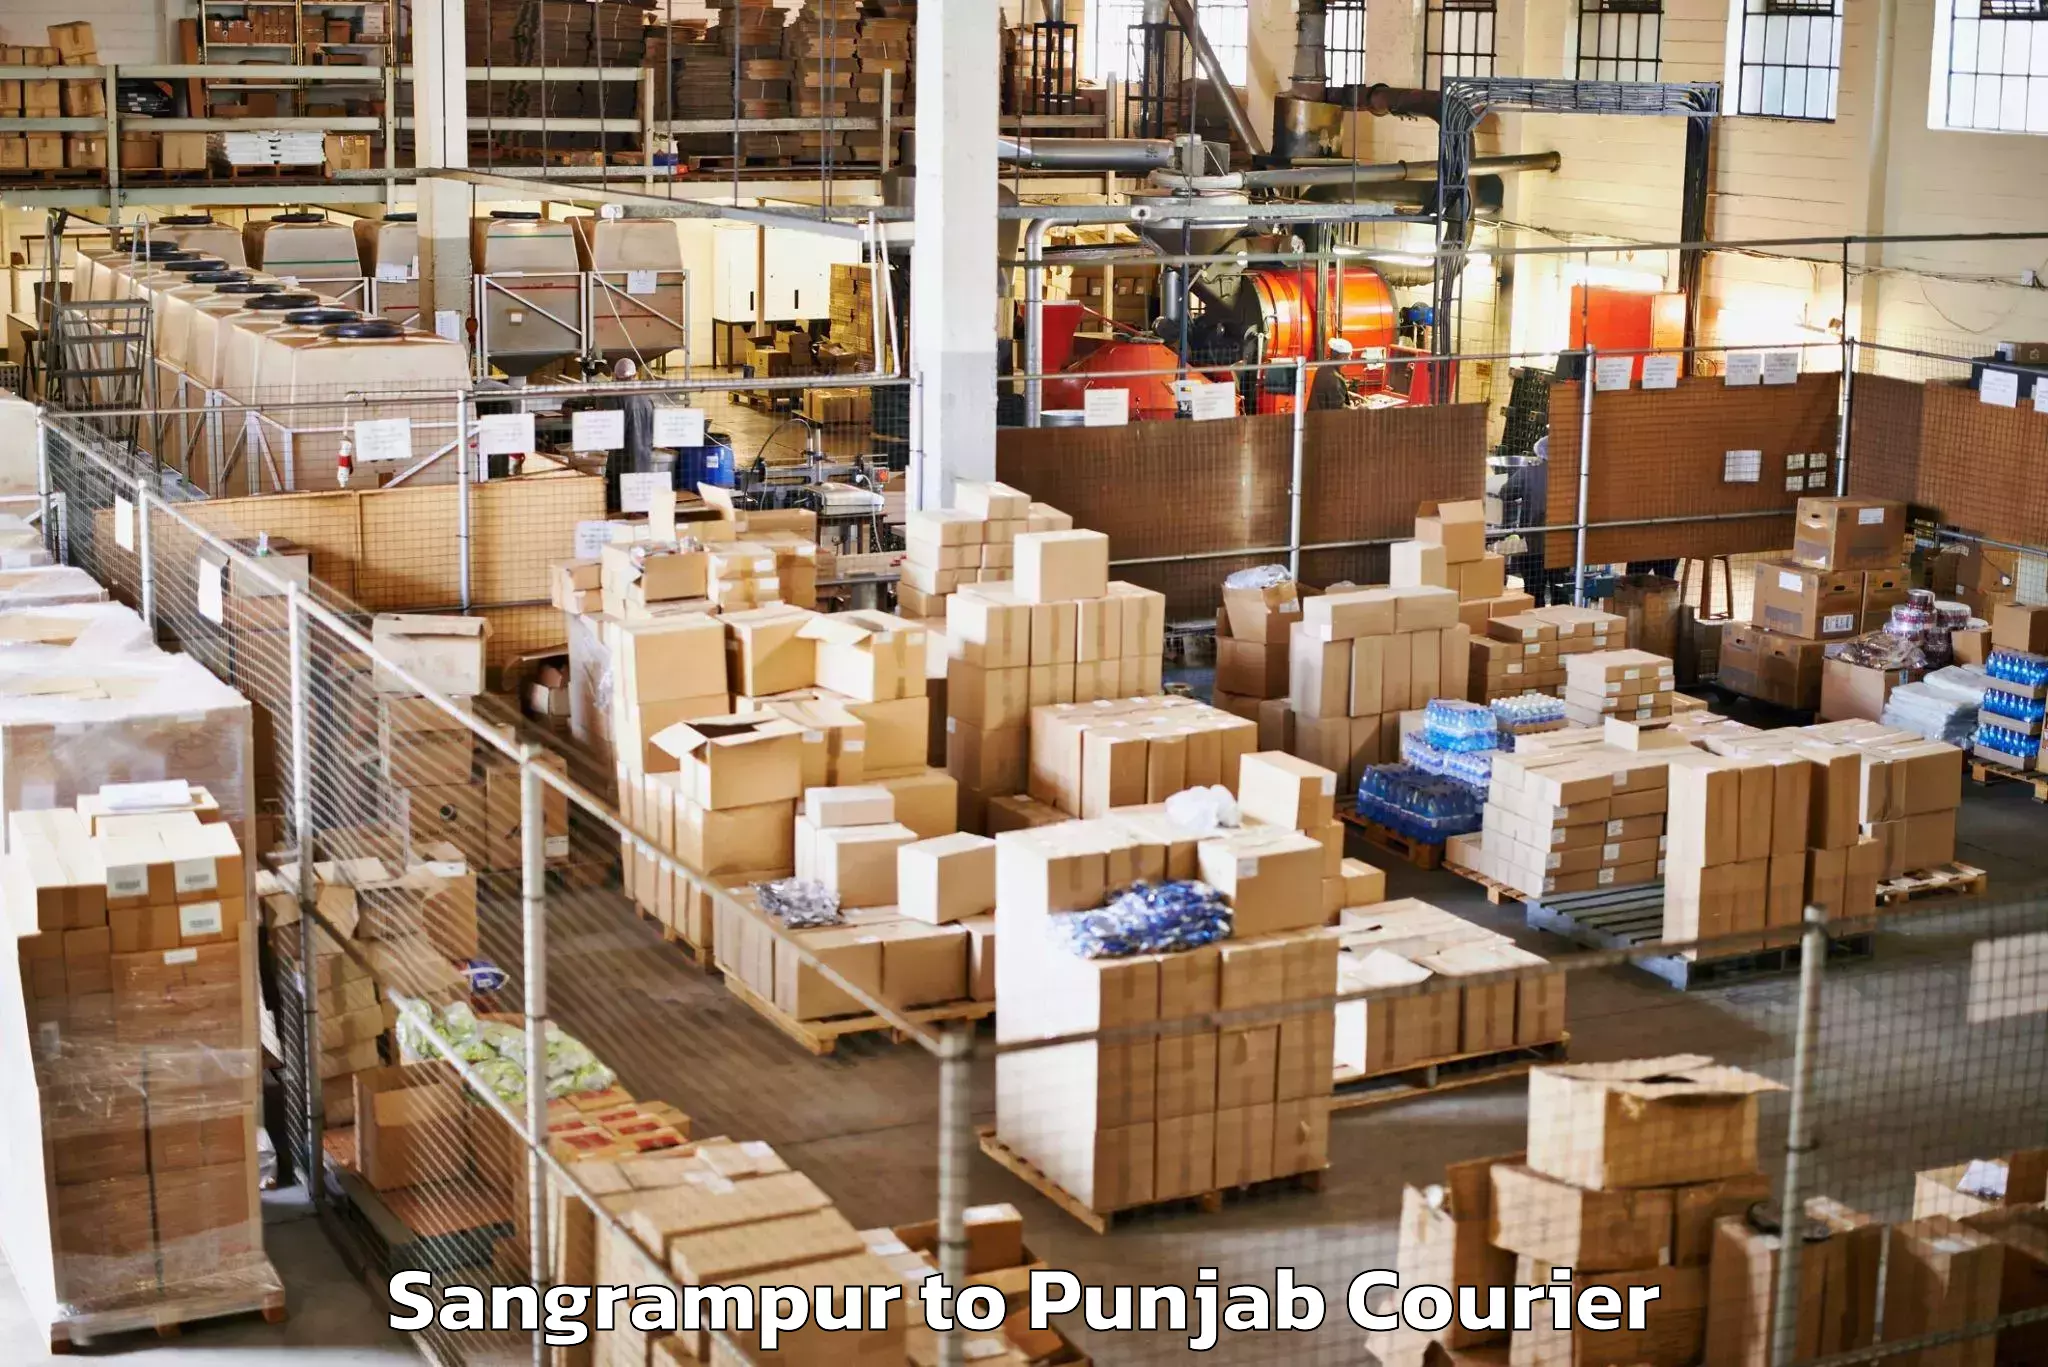 Luggage shipment strategy Sangrampur to Punjab